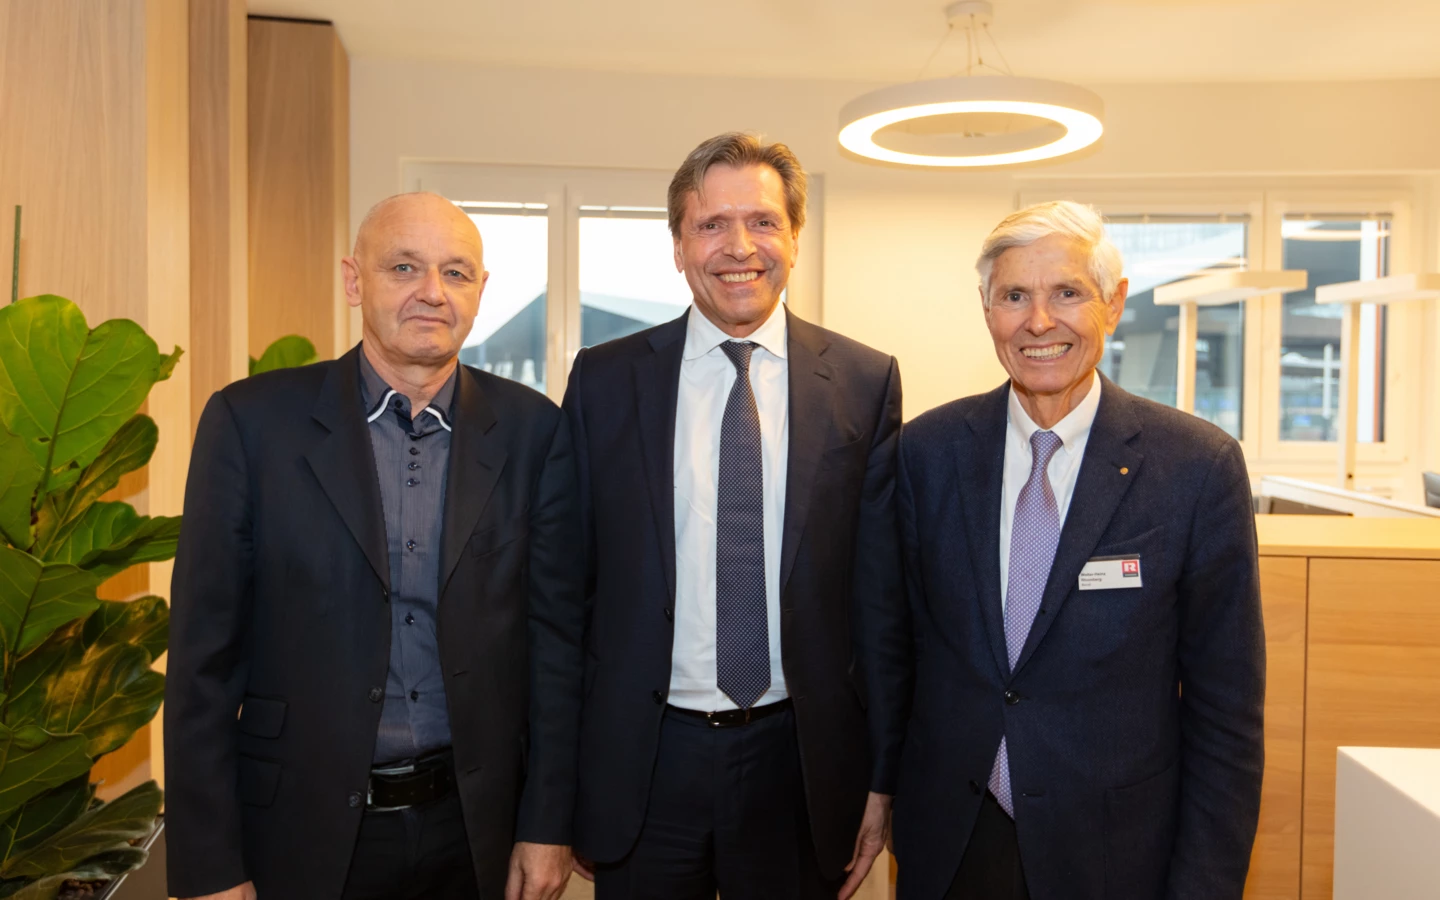 Ebenfalls zu Gast bei der Eröffnungsfeier der neuen Büroräumlichkeiten der Beirat der Rhomberg Holding: v.l.n.r. Dr. Wolfgang Kappl, Wolfgang Niessner und Kommerzialrat Walter-Heinz Rhomberg.